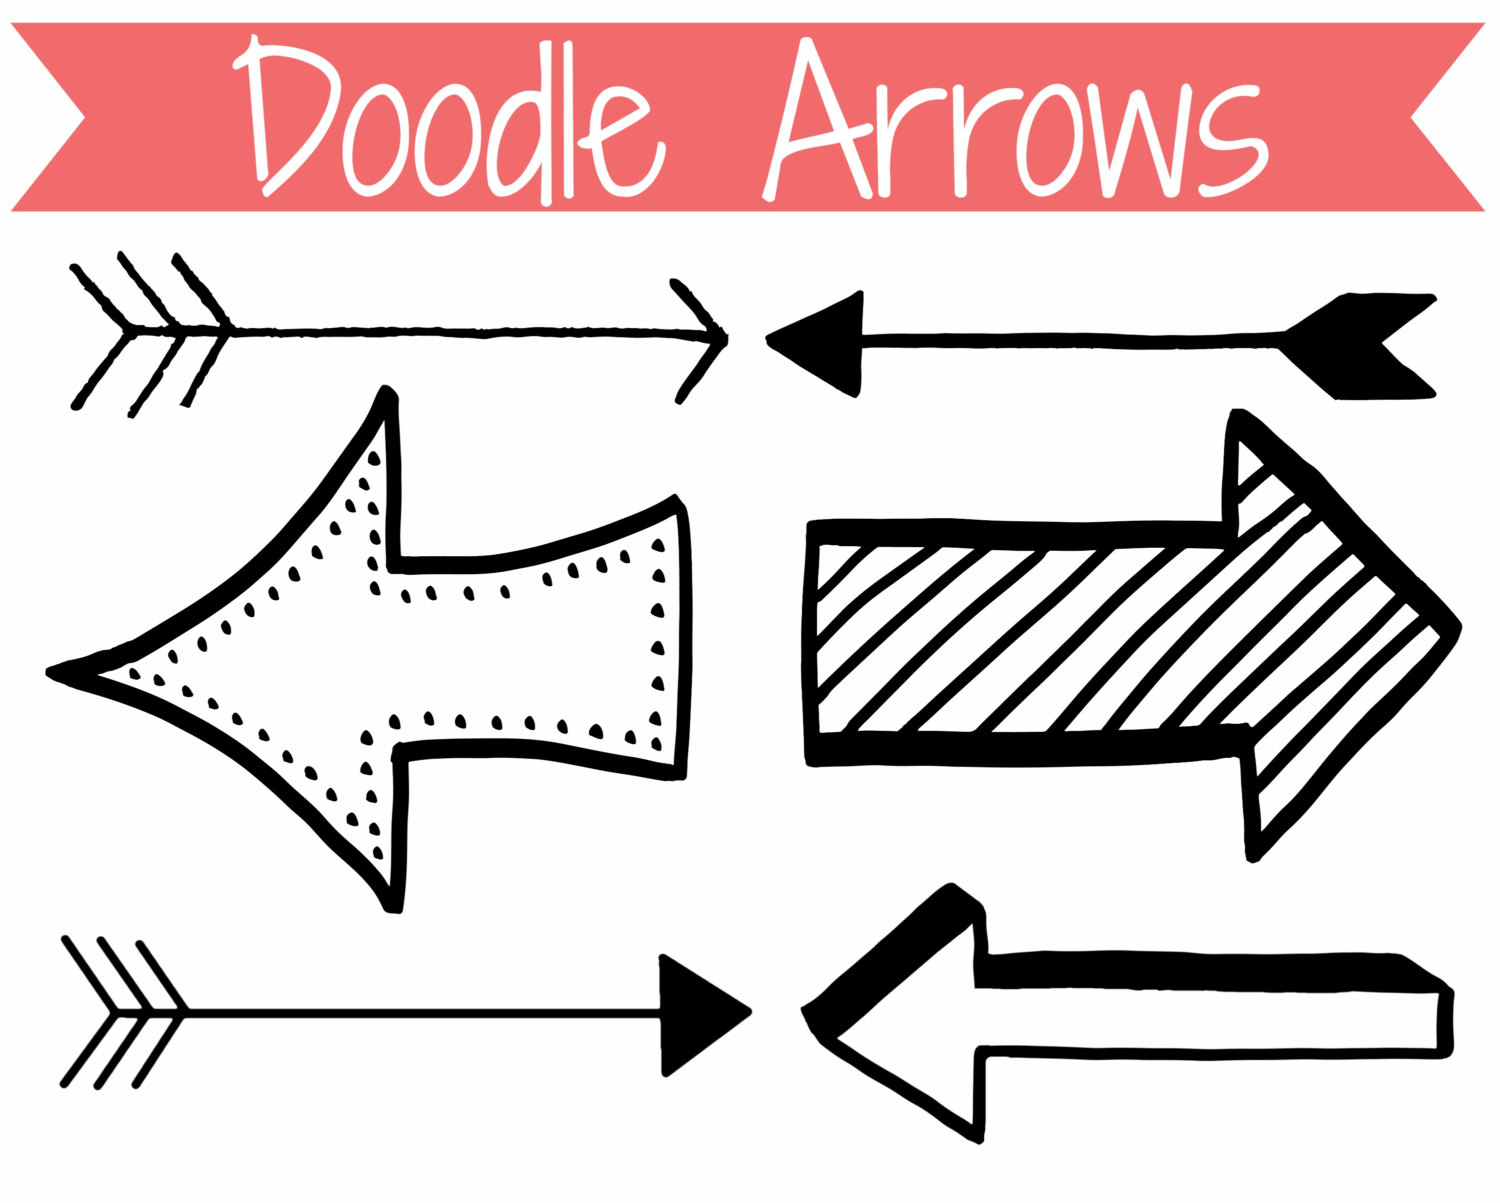 arrow clipart doodle